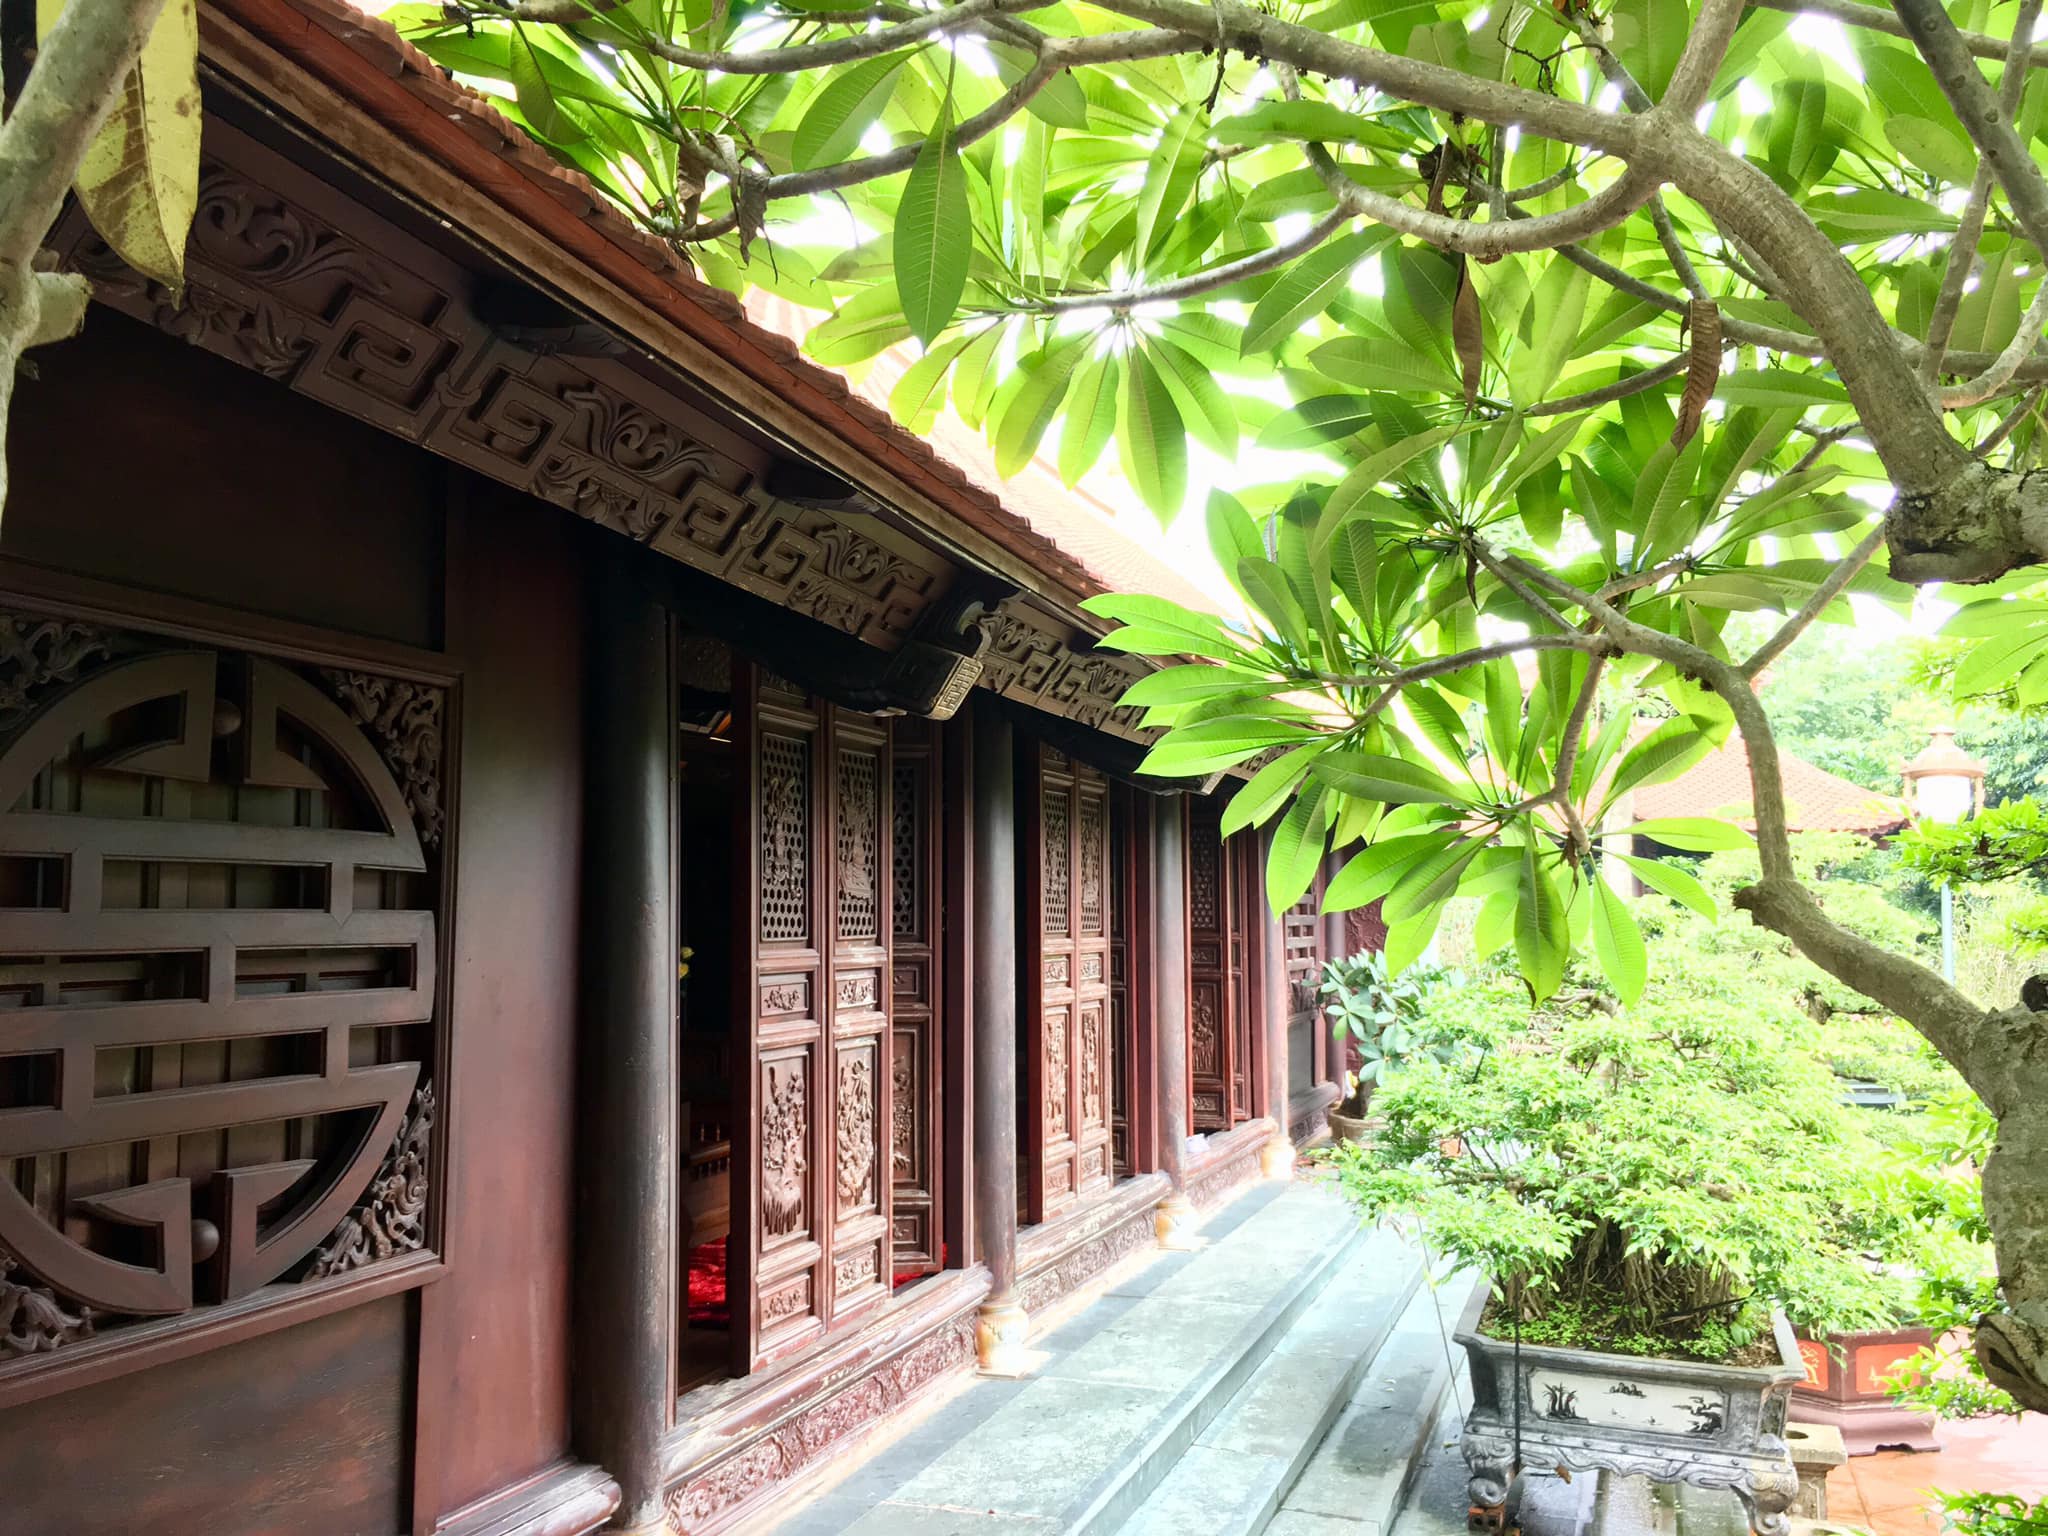 Cận cảnh nhà cổ trăm tuổi toàn bằng gỗ quý, đẹp hiếm có ở Nam Định - 4